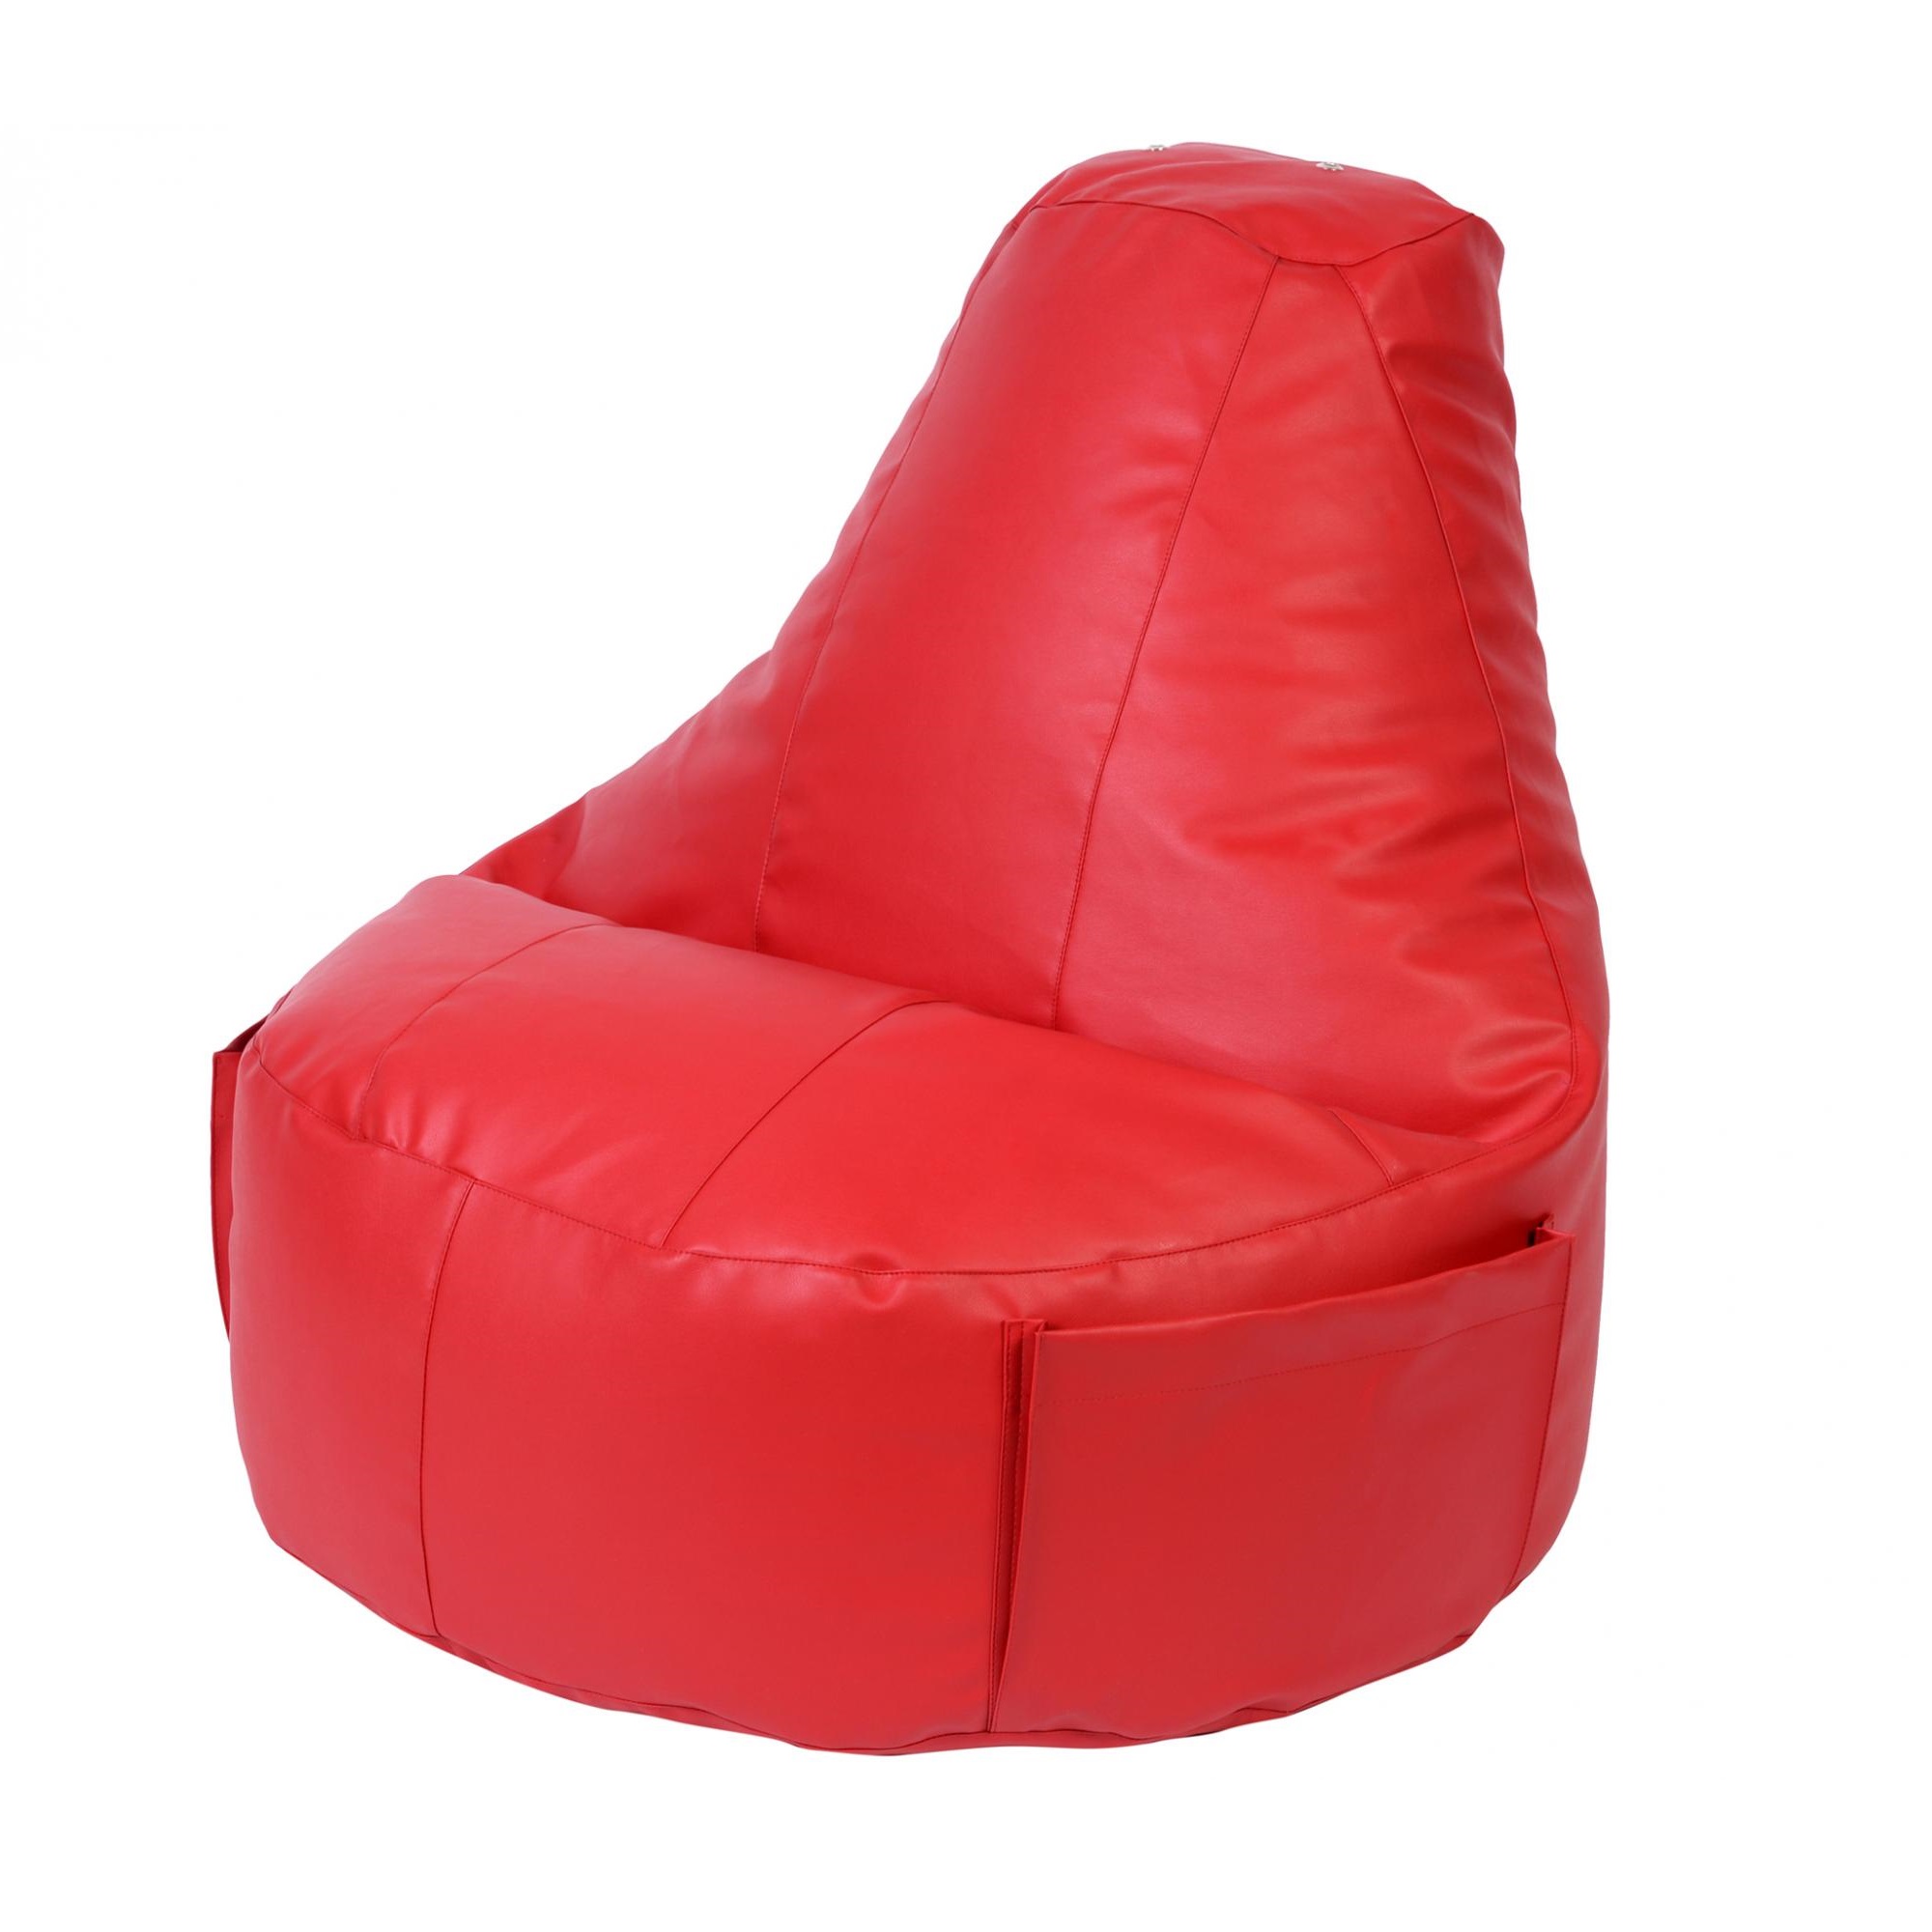 Кресло Dreambag Comfort красное экокожа 150x90 см кресло мешок кресло мешок конфетти italy экокожа